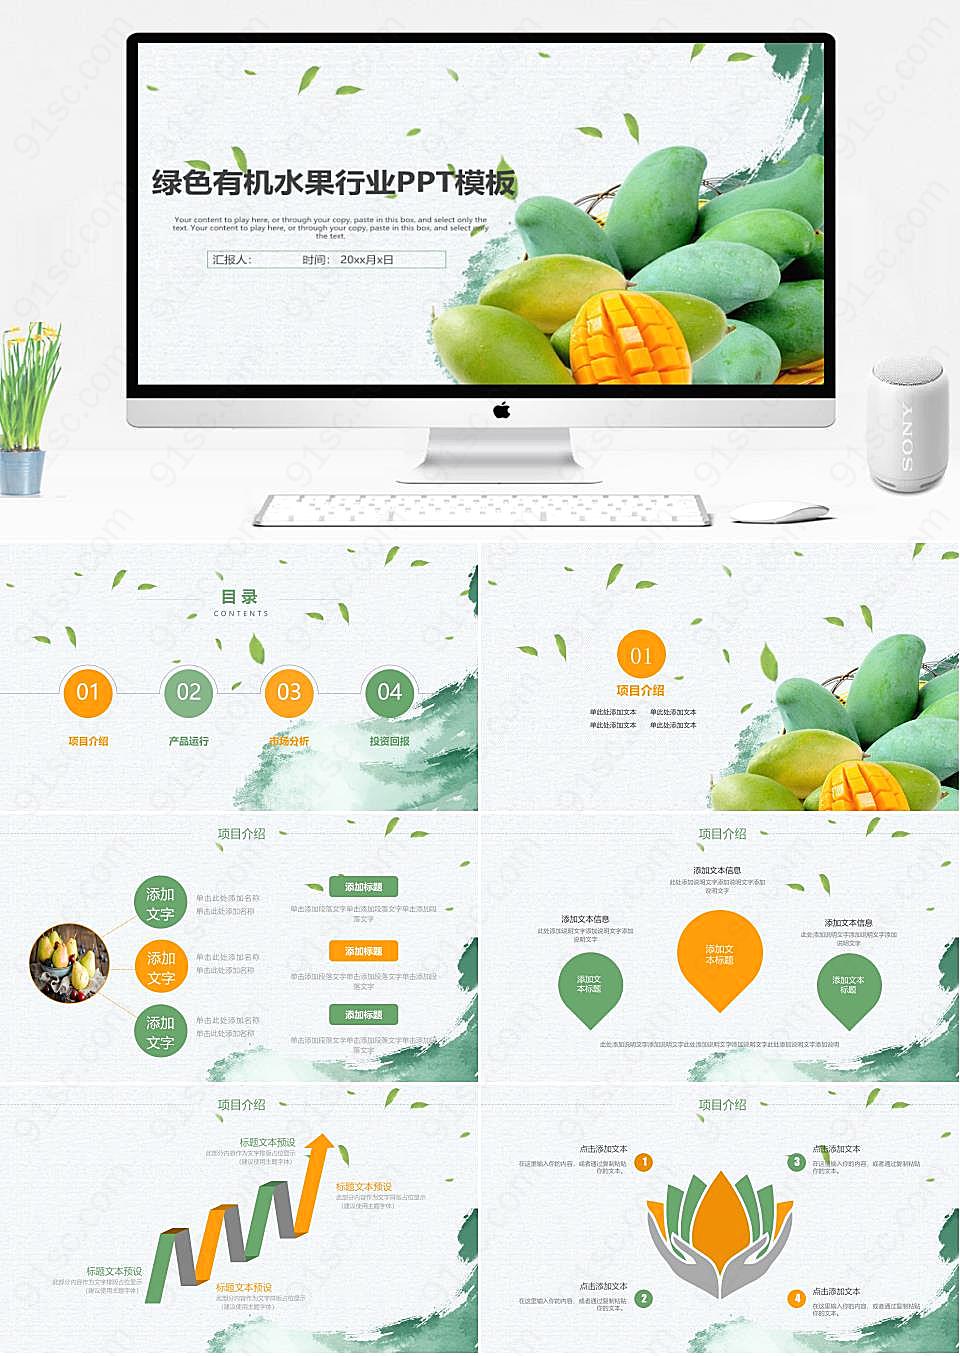 极简设计在绿色健康有机水果中的应用产品介绍PPT模板下载